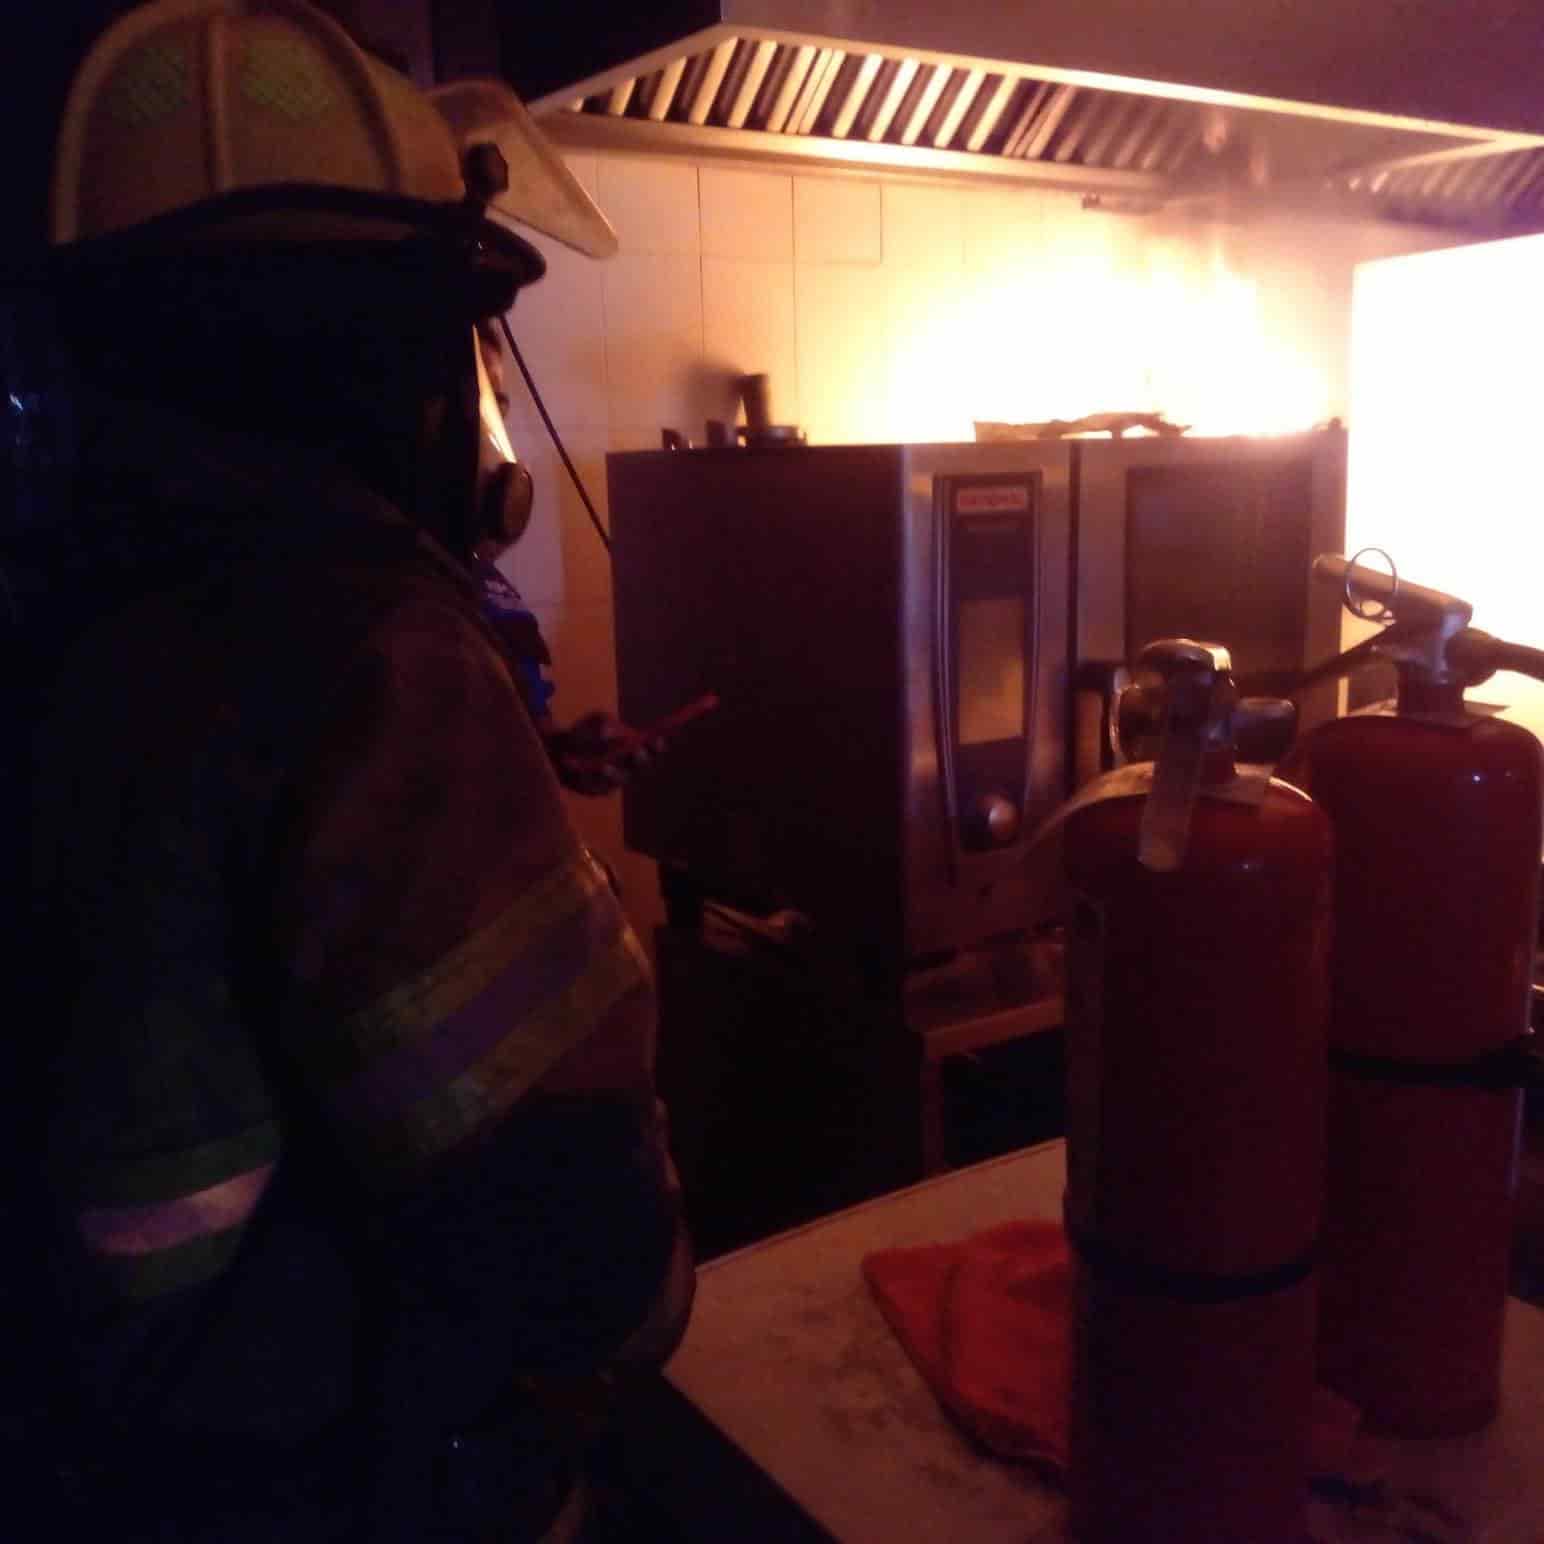 Los puestos de socorro se concentraron en un restaurante de comida rápida, ubicado en el municipio de Apodaca, donde se registró un conato de incendio